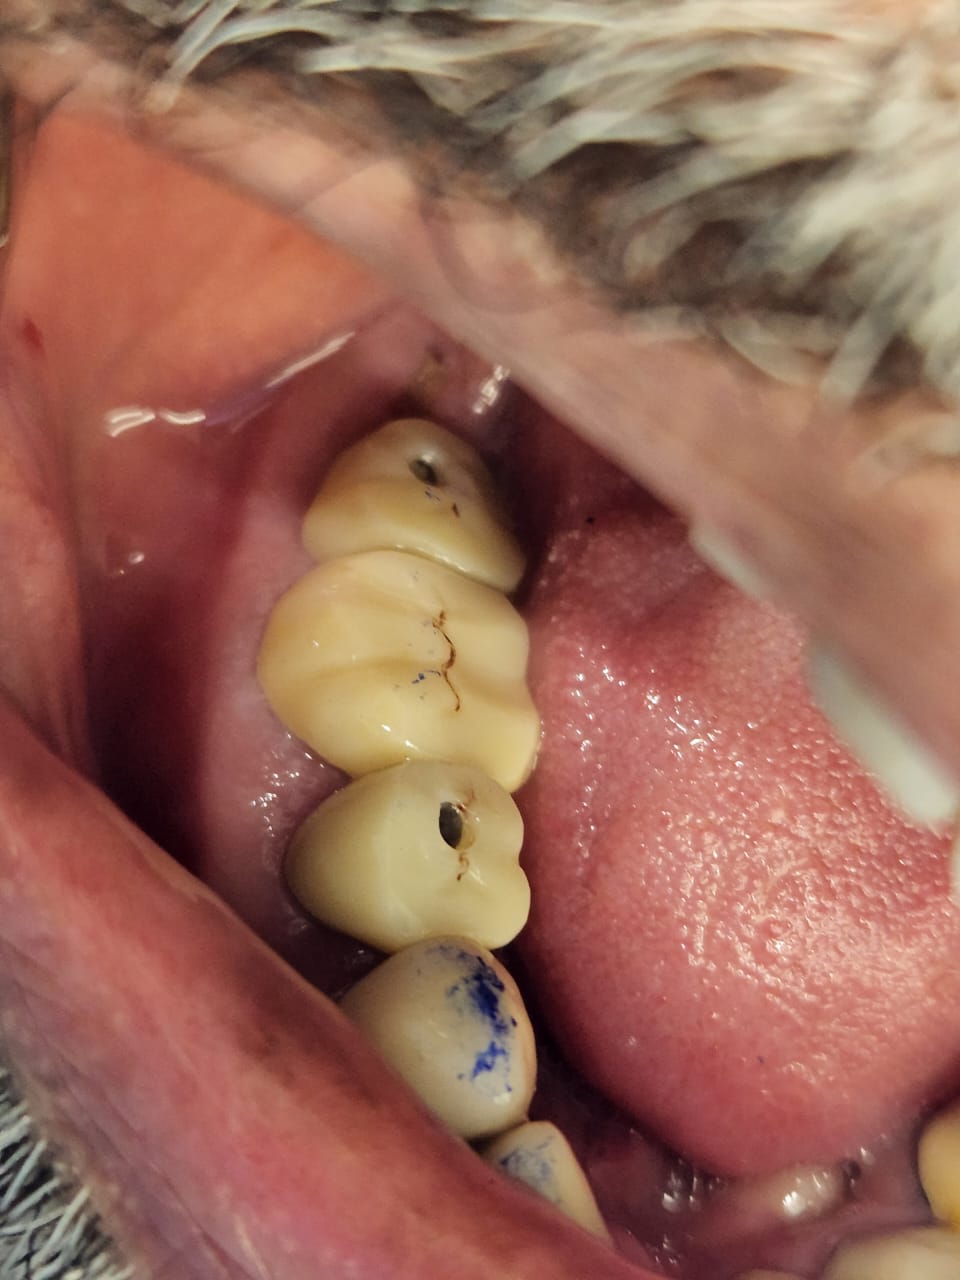 dental implants case 1-4